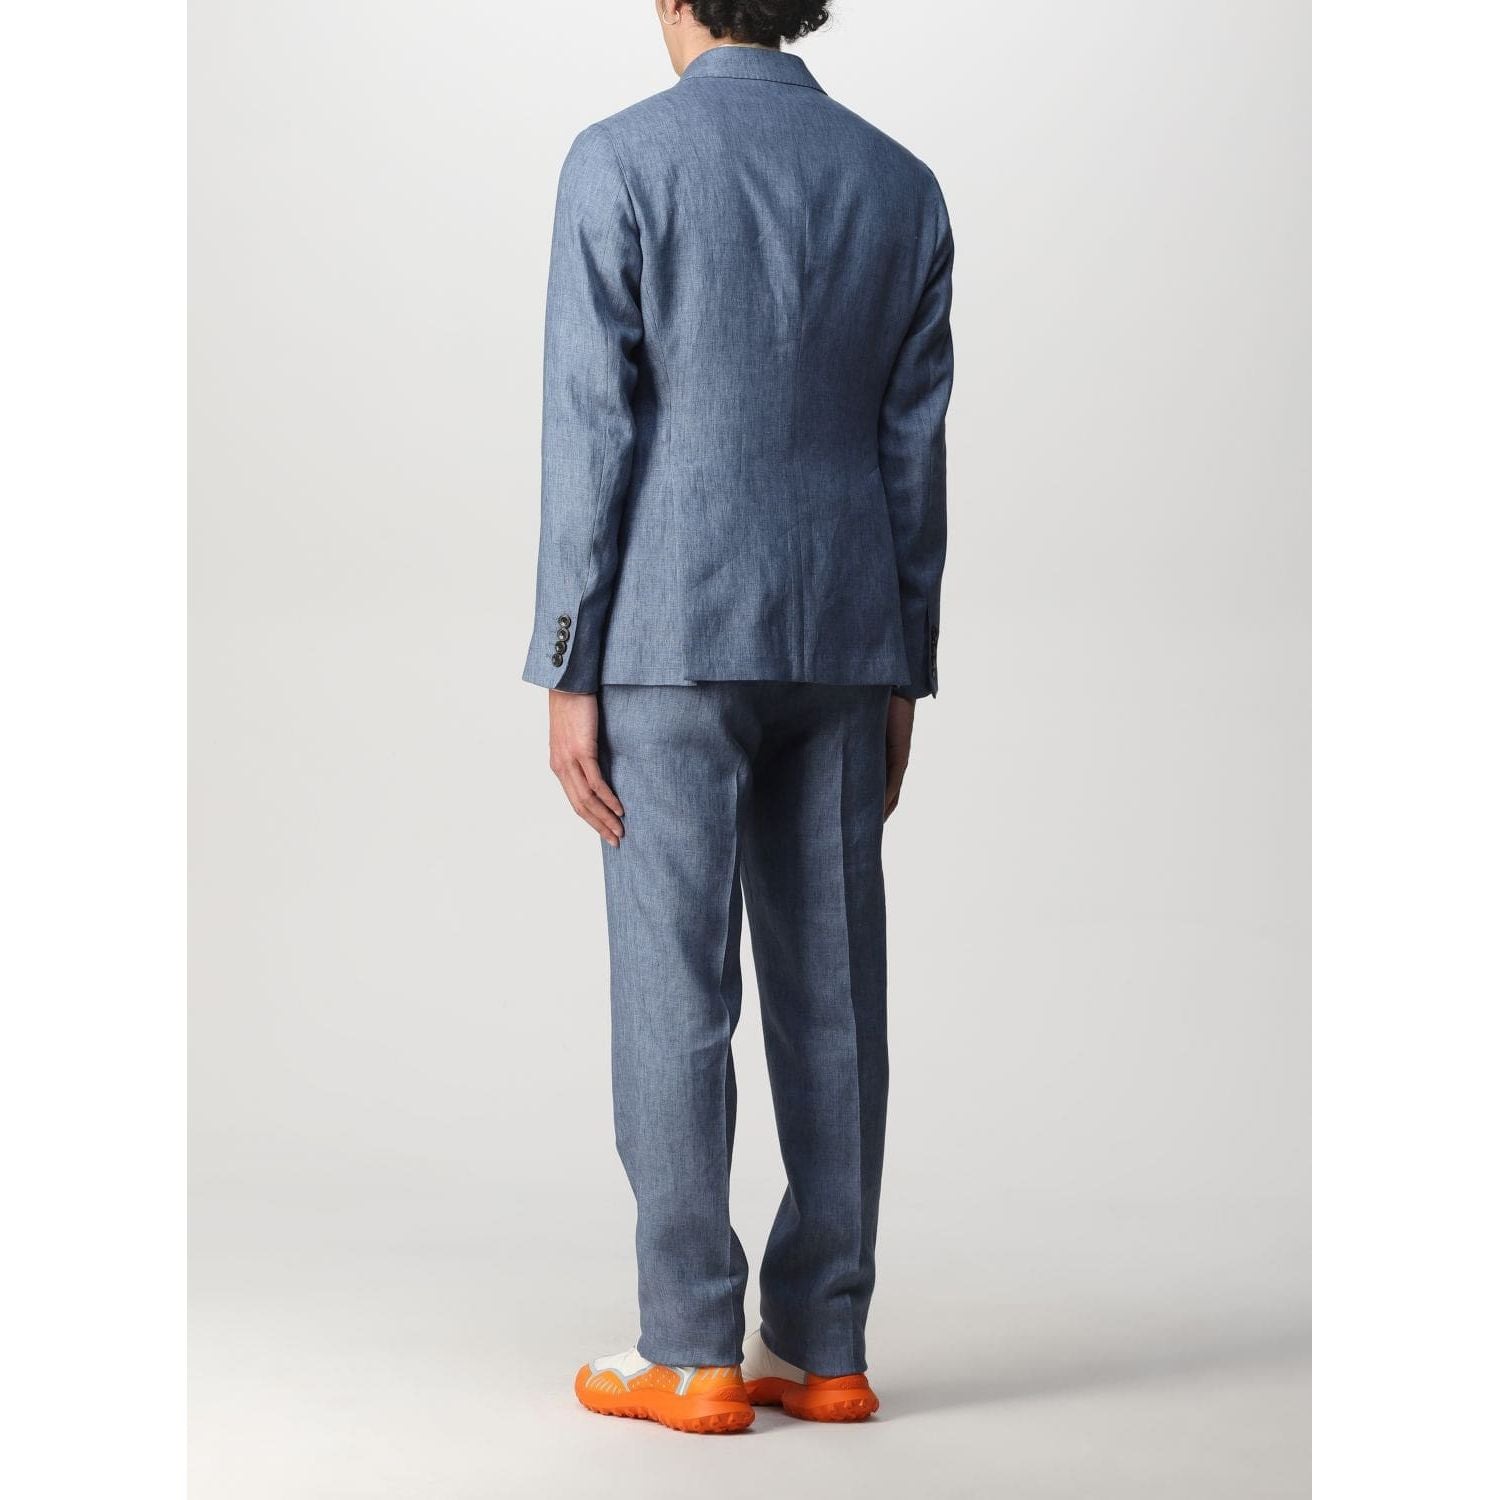 Emporio Armani suit - Yooto